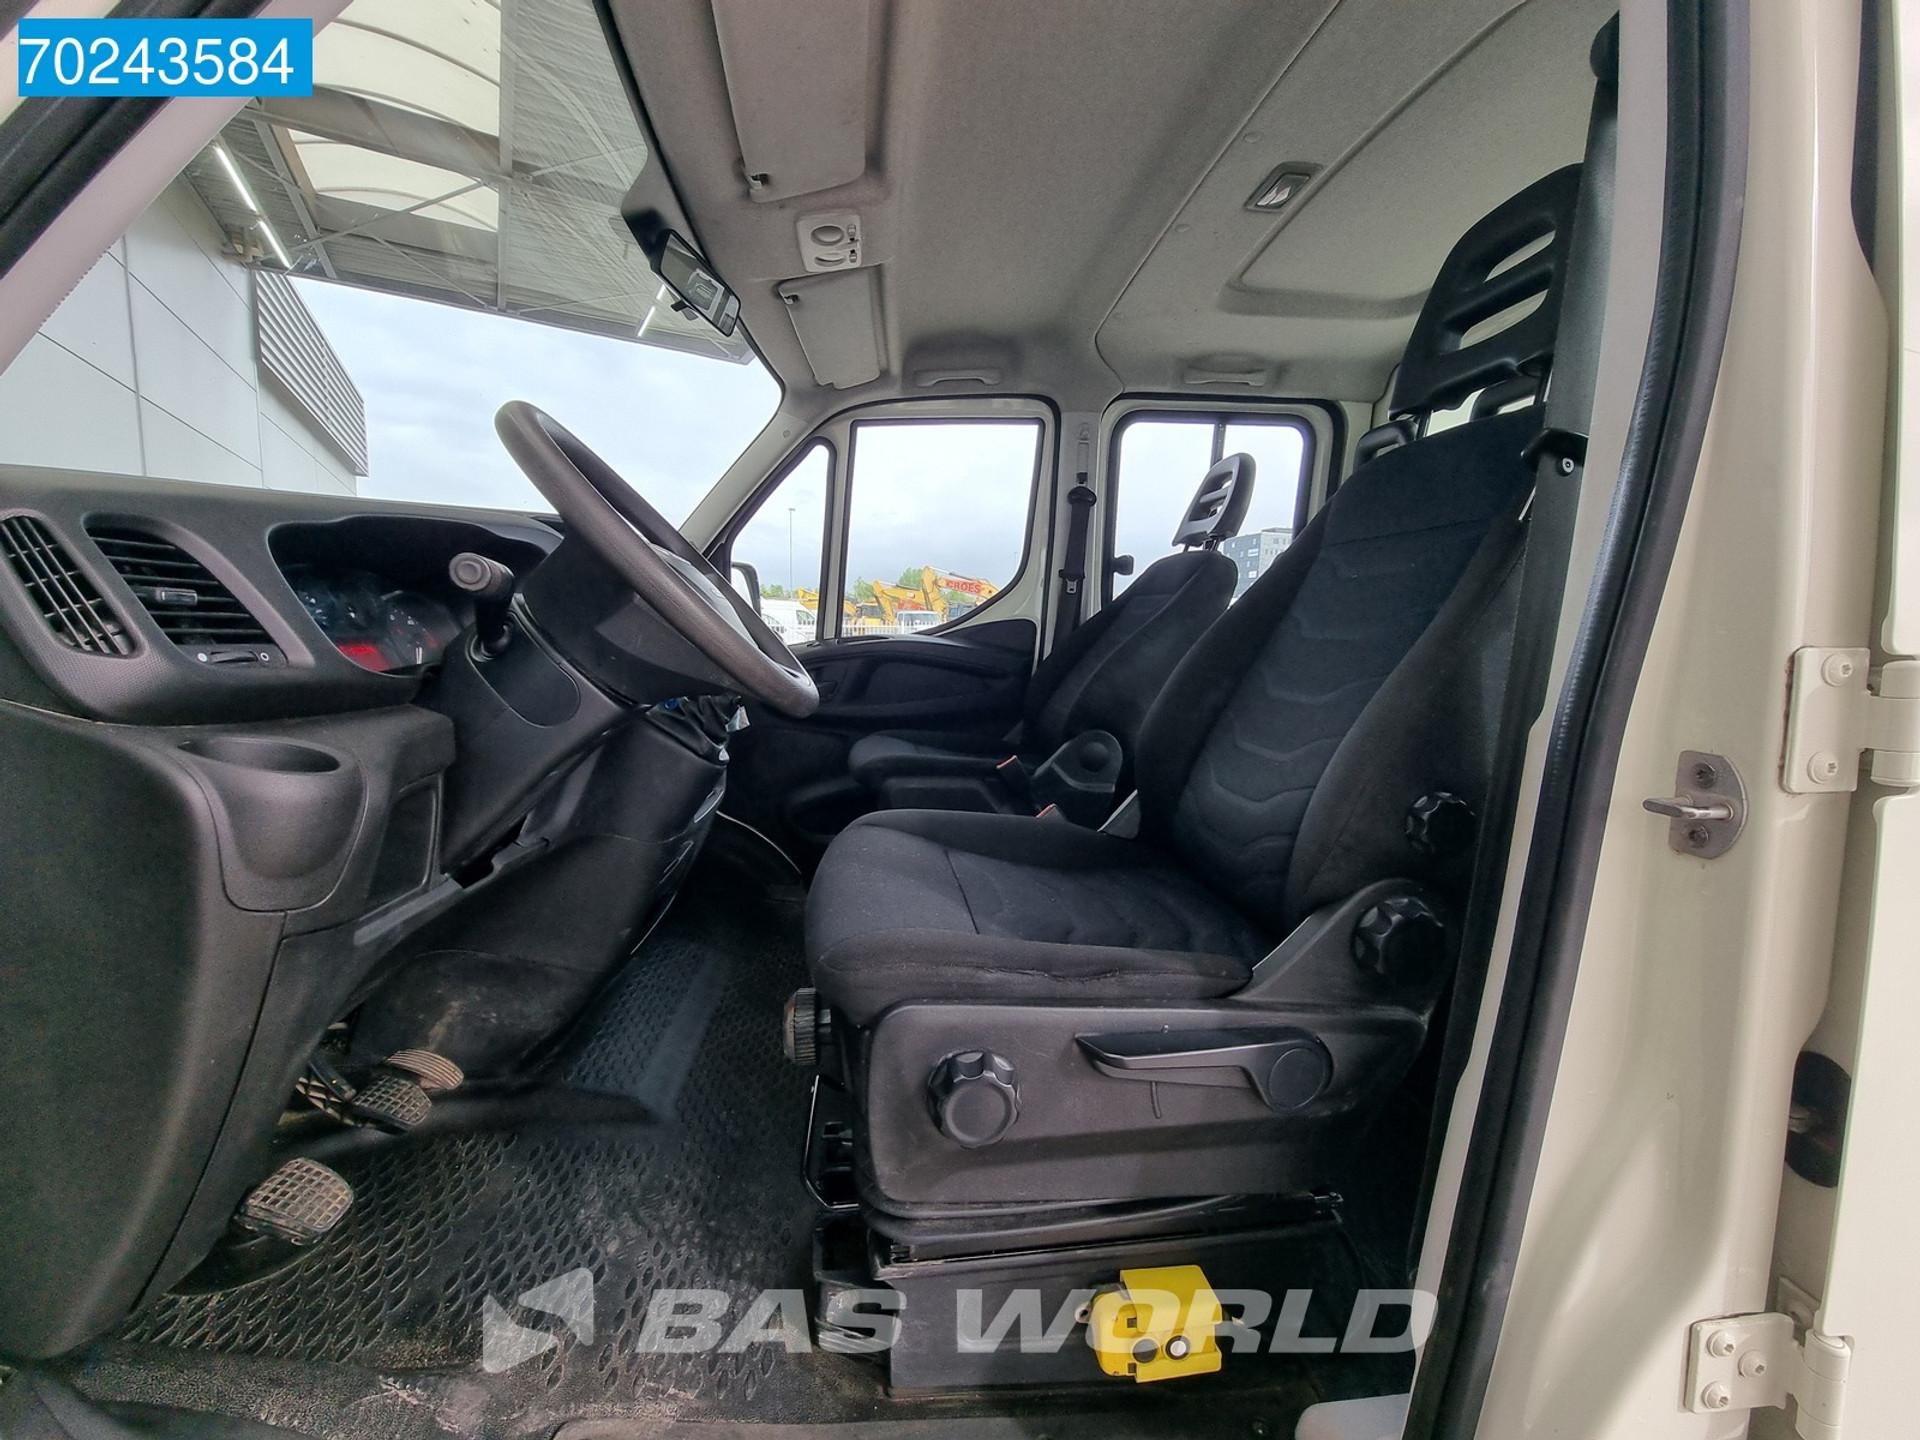 Foto 19 van Iveco Daily 35C12 Kipper Euro6 Dubbel Cabine 3500kg trekhaak Tipper Benne Kieper Dubbel cabine Trekhaak